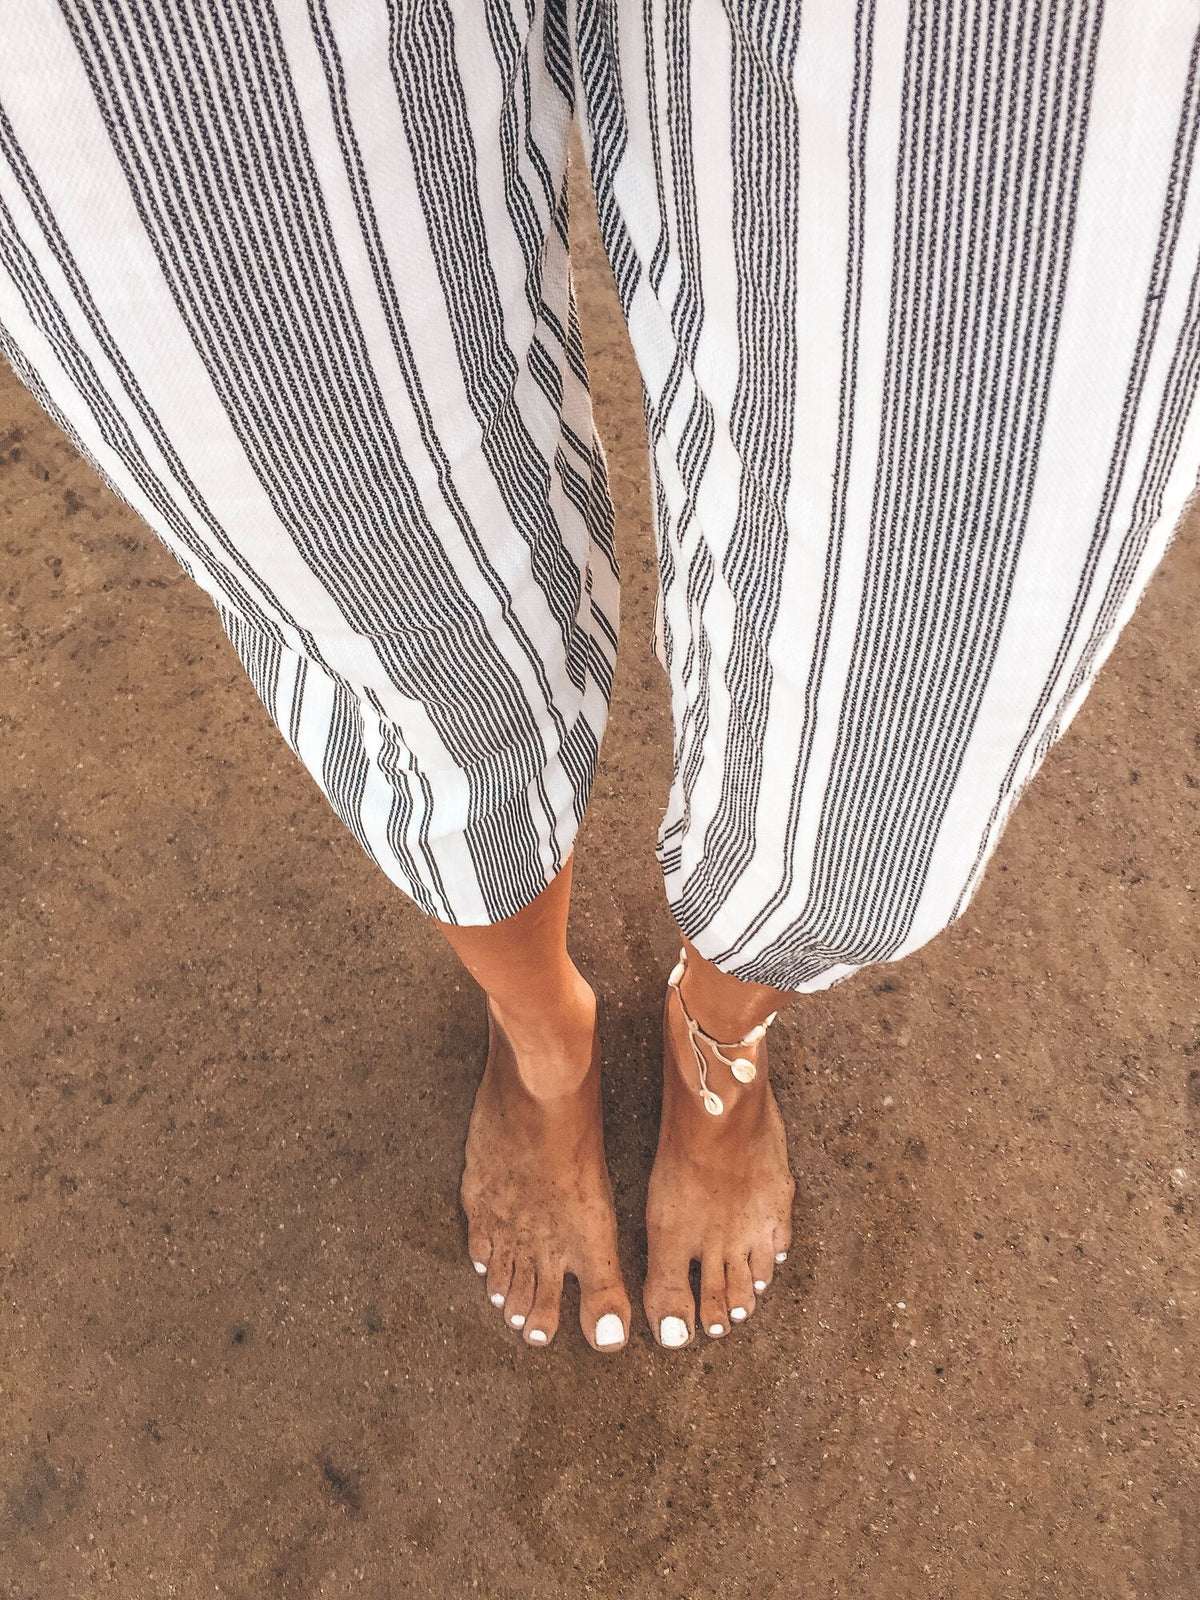 Füße stehen im Sand